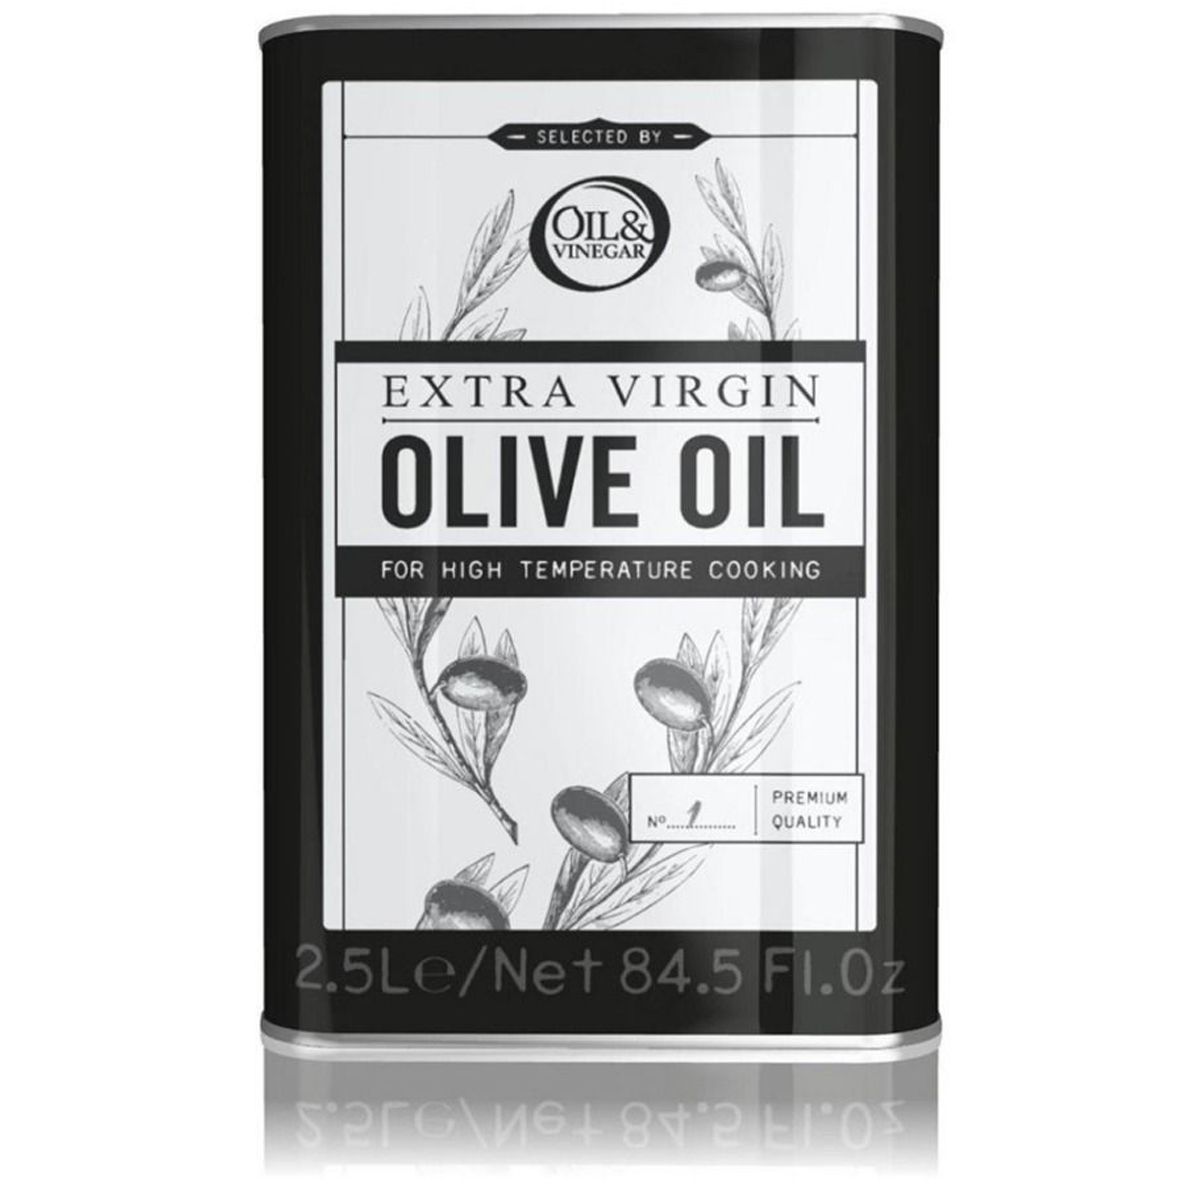 Oil & Vinegar Huile d'Olive pour Cuire et Rôtir boîte métallique